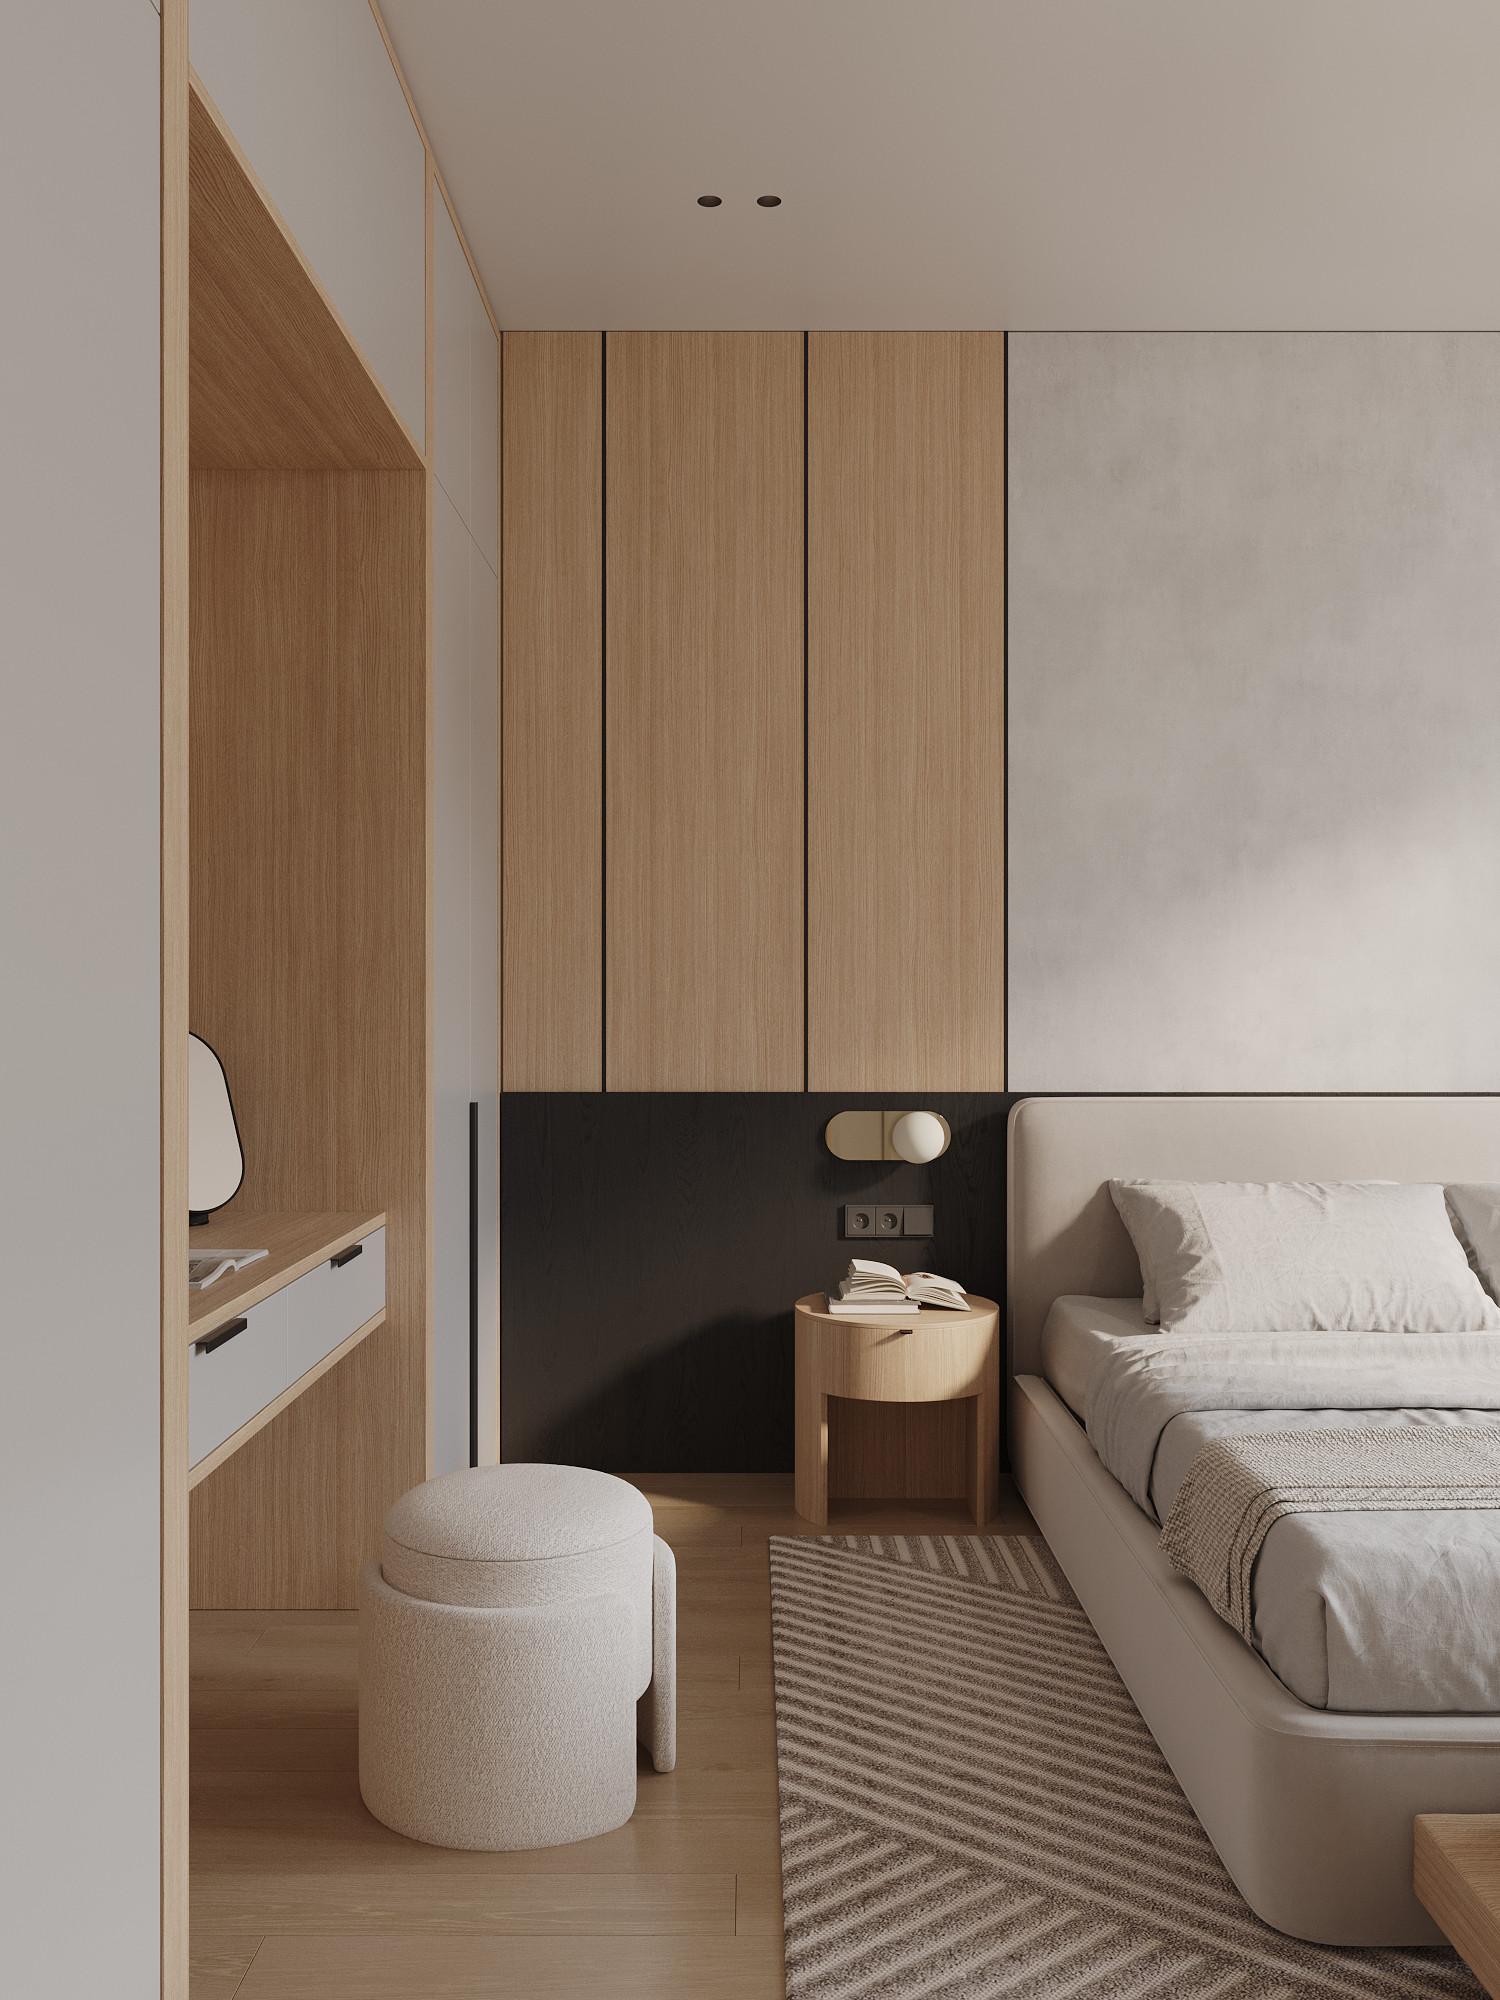 Интерьер спальни с шкафом над кроватью, шкафом напротив кровати и шкафом у кровати в современном стиле, в стиле лофт и эко